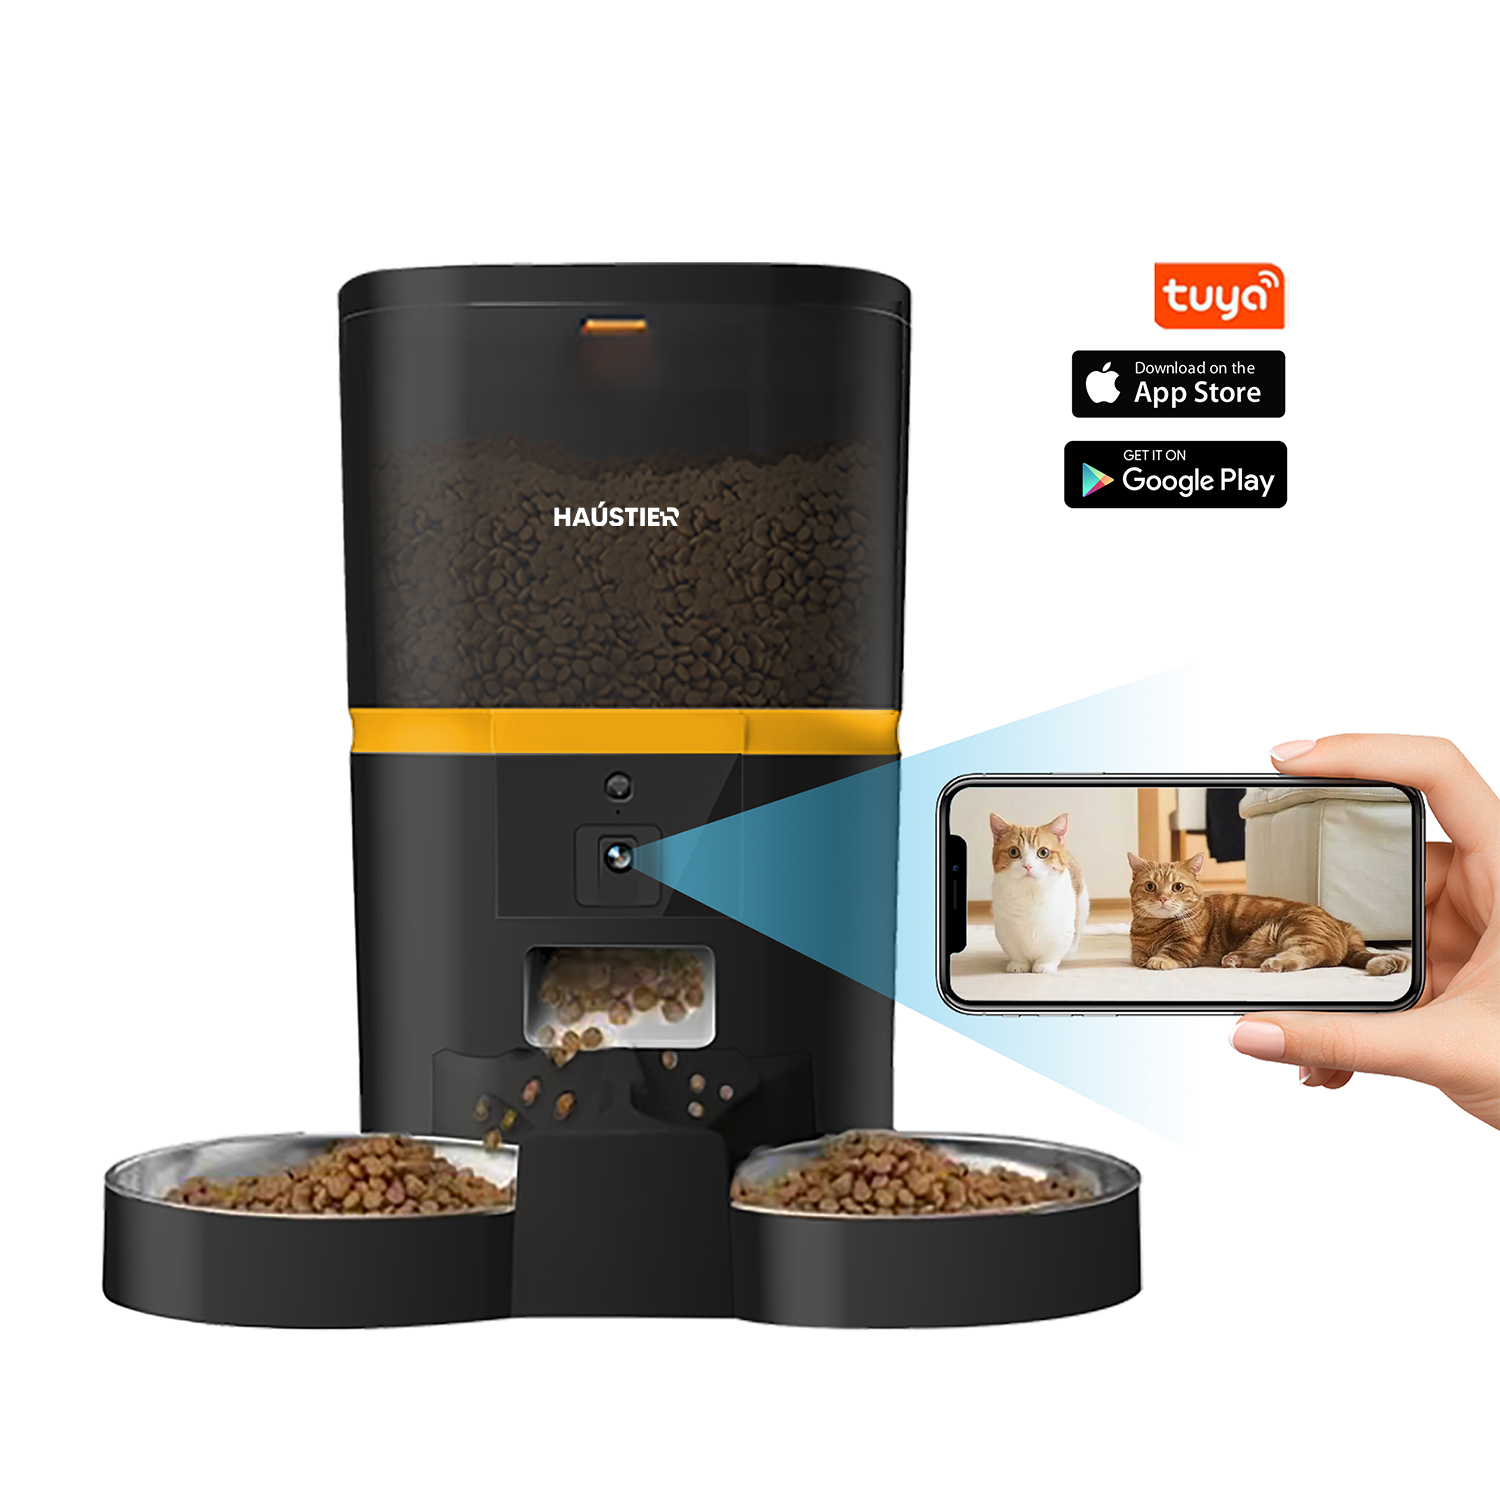 Haustier QQ005-Dual Akıllı Kedi Köpek Otomatik Mama Kabı , Tuya App-Wifi Uzaktan Kontrol, Sesle Çağırma, Ayarlanabilir Kamera, 6Lt hazne, Metal Kase, Siyah